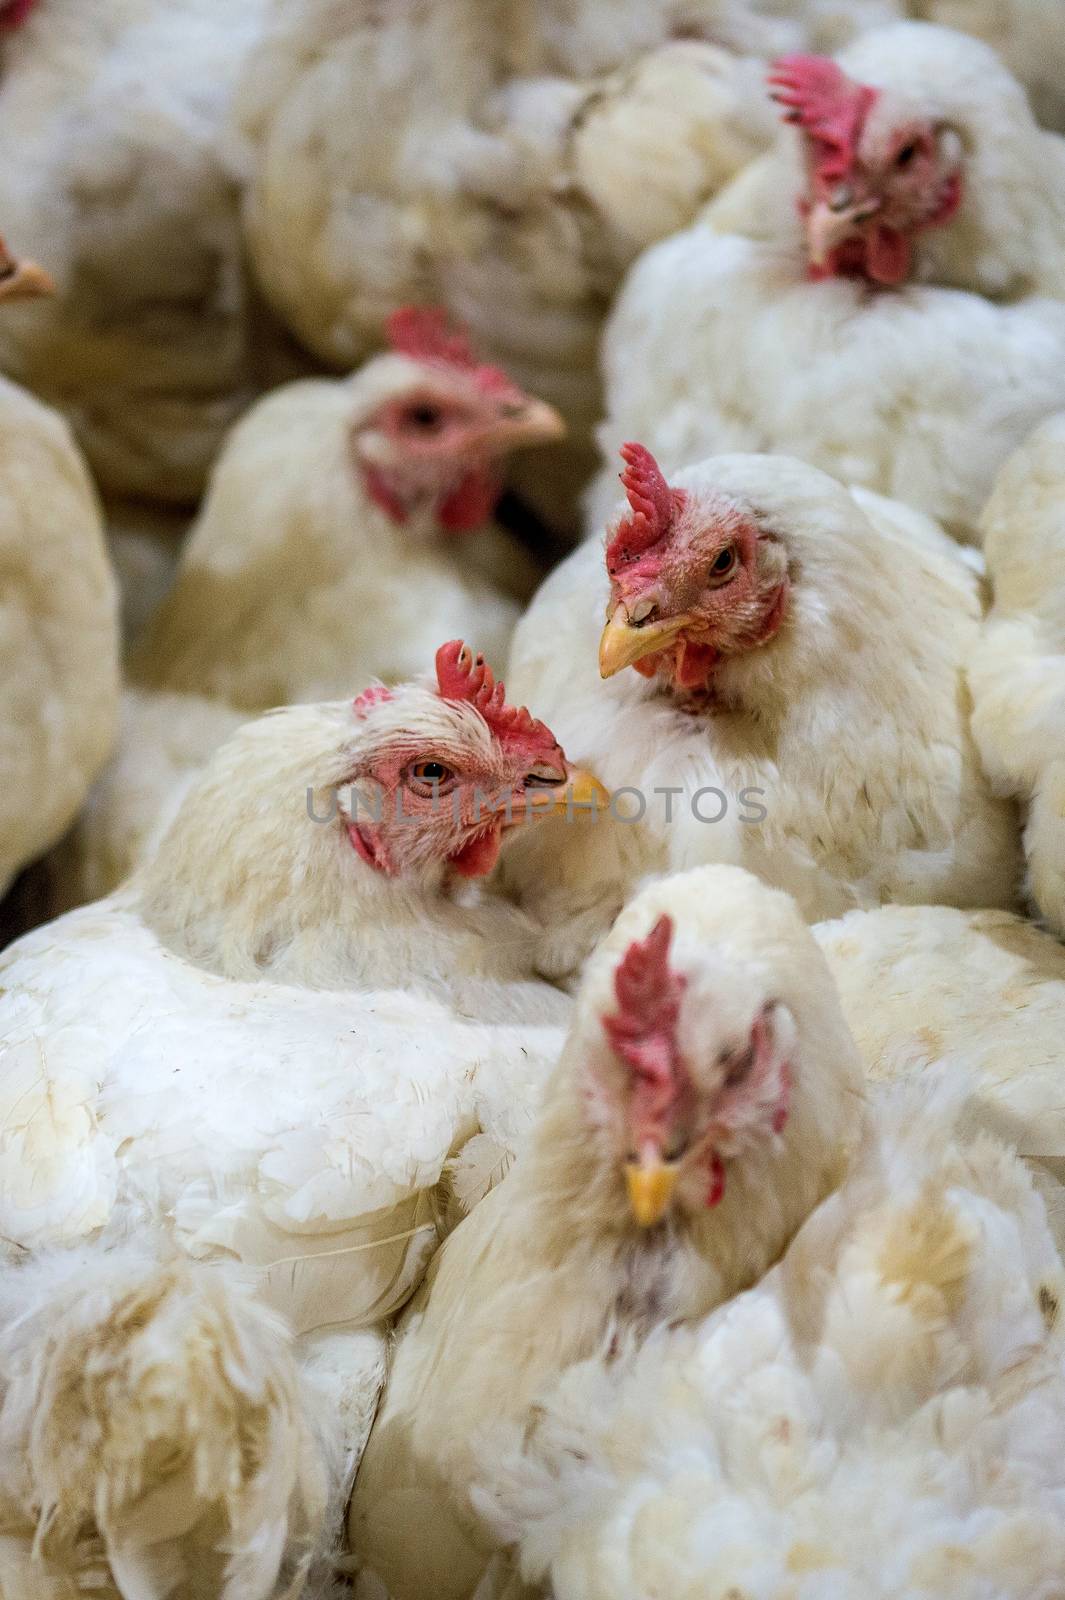 Sick chicken or Sad chicken in farm,Epidemic, bird flu, health problems. by gutarphotoghaphy